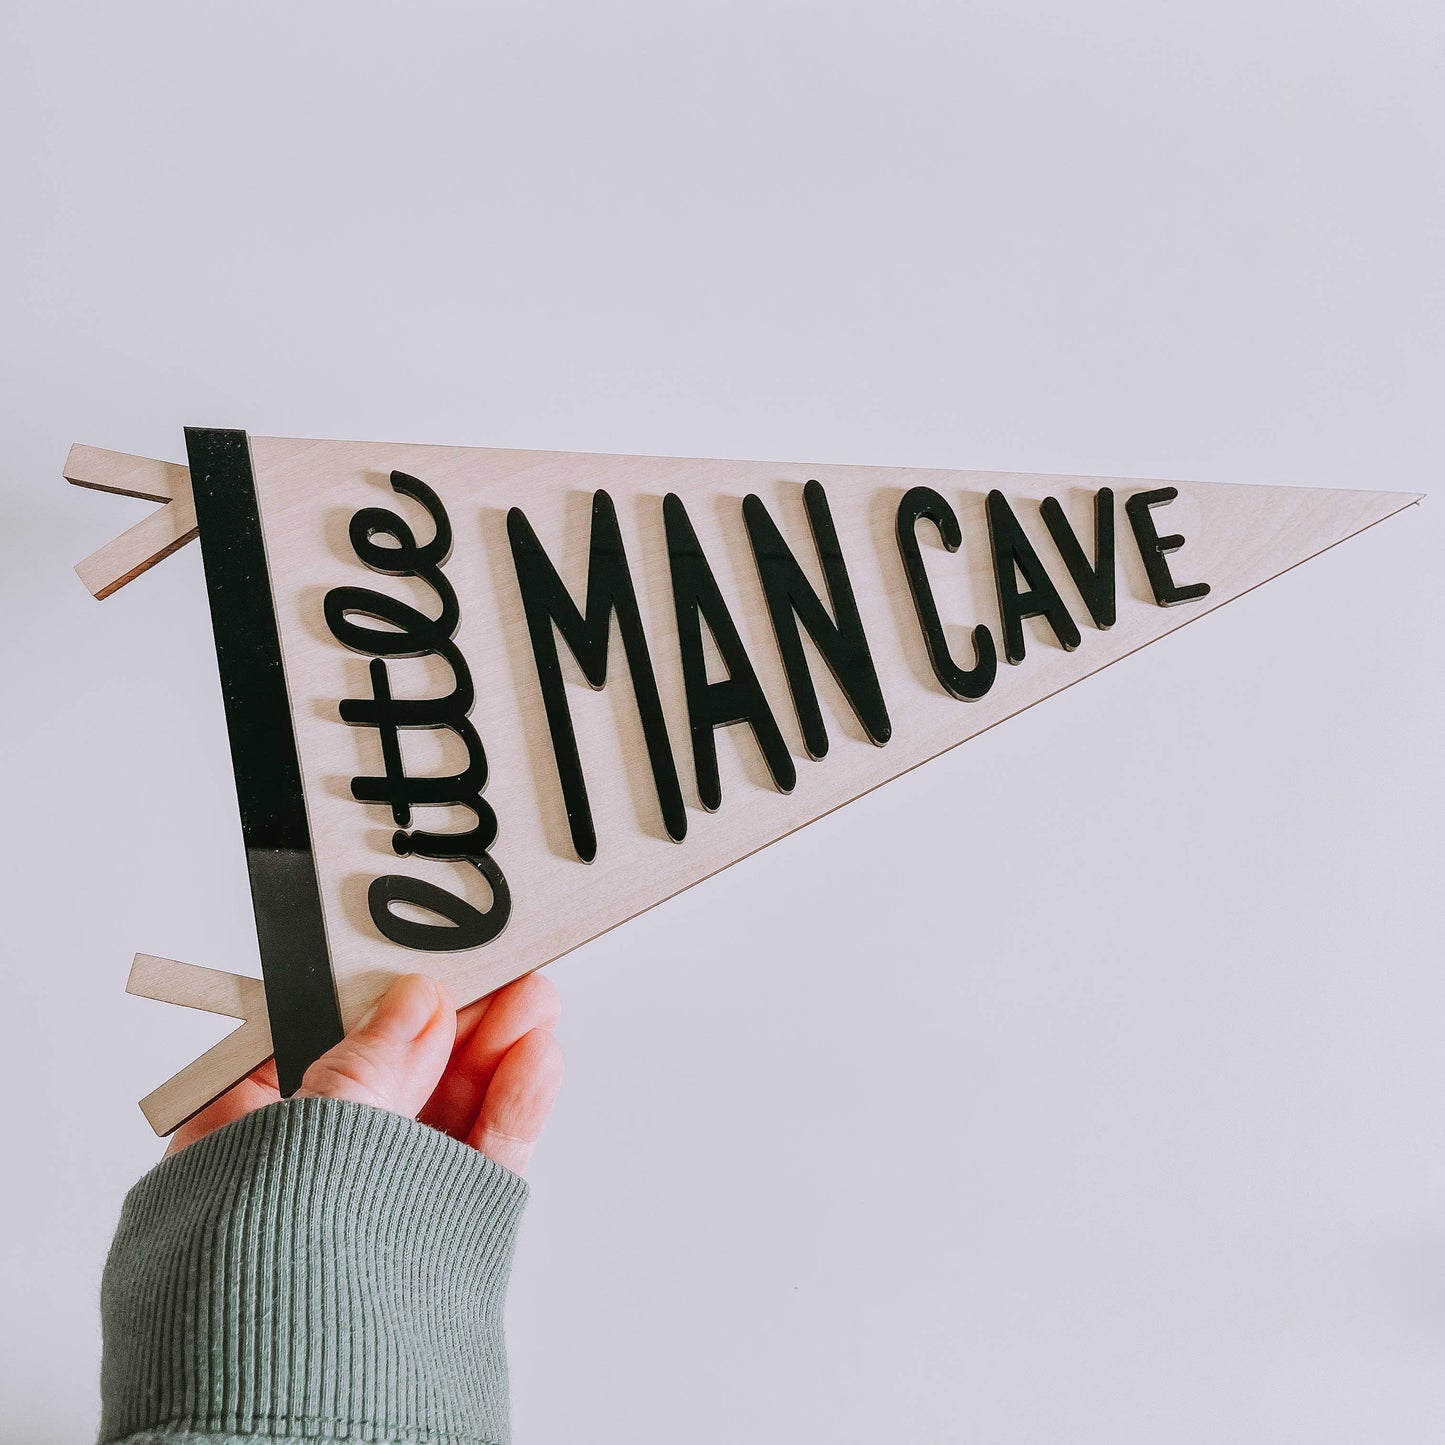 Little Man Cave Wooden Banner